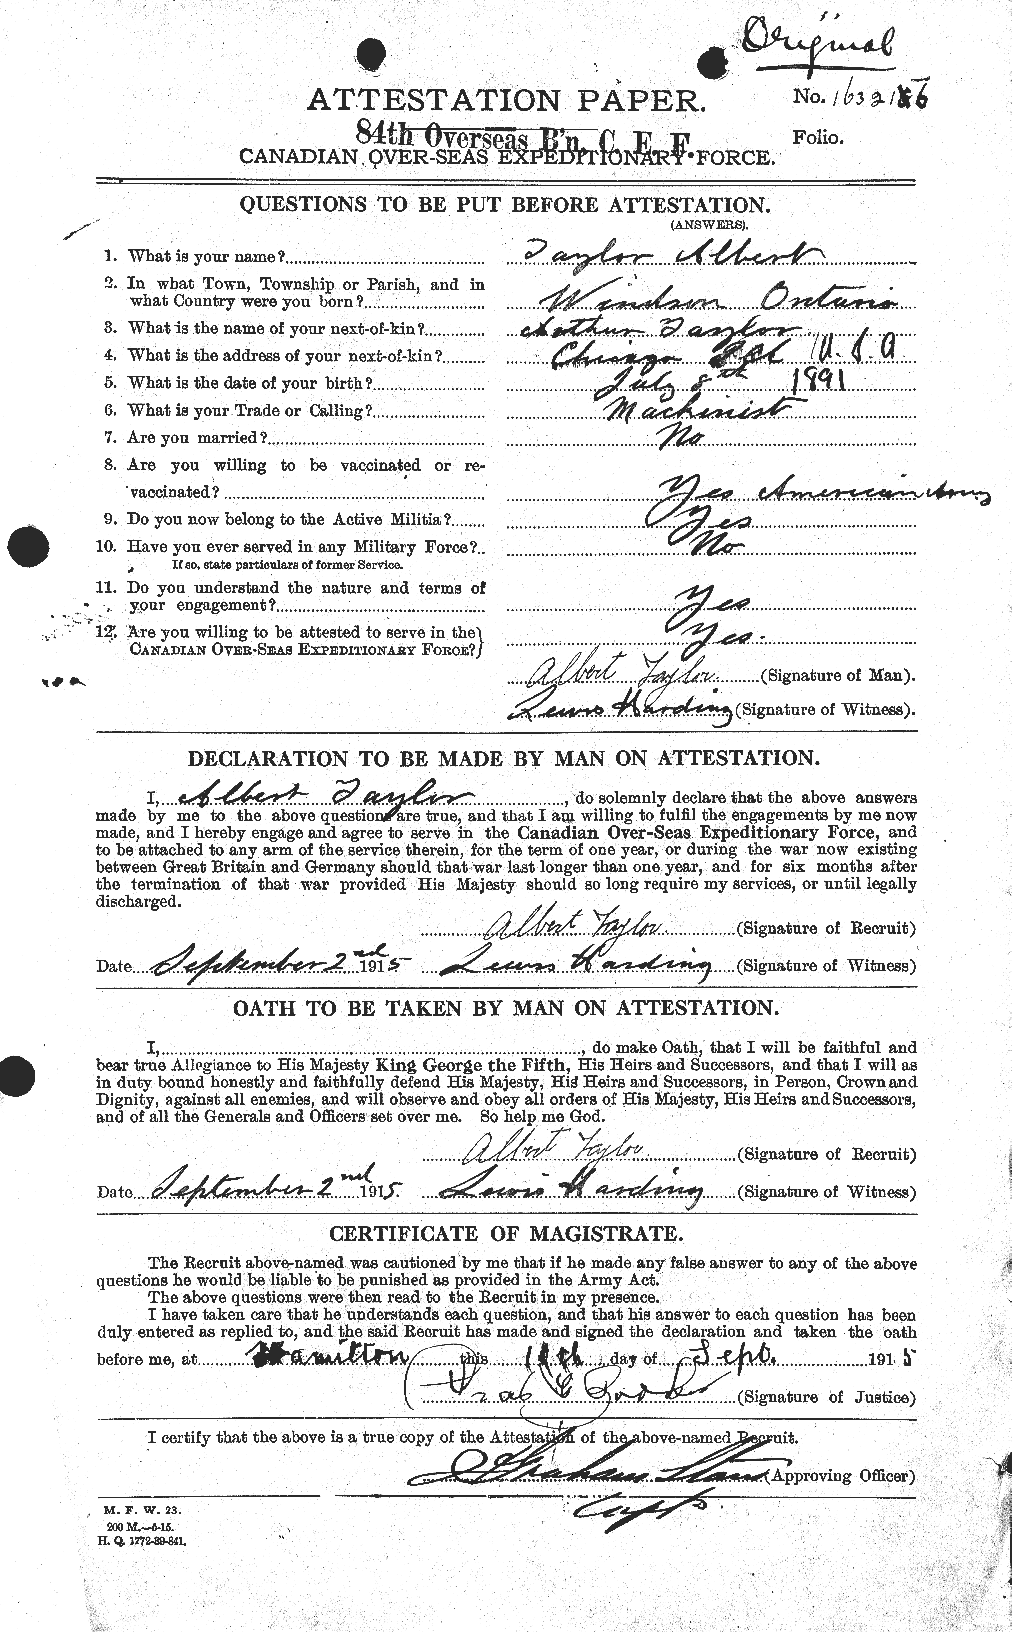 Dossiers du Personnel de la Première Guerre mondiale - CEC 626089a